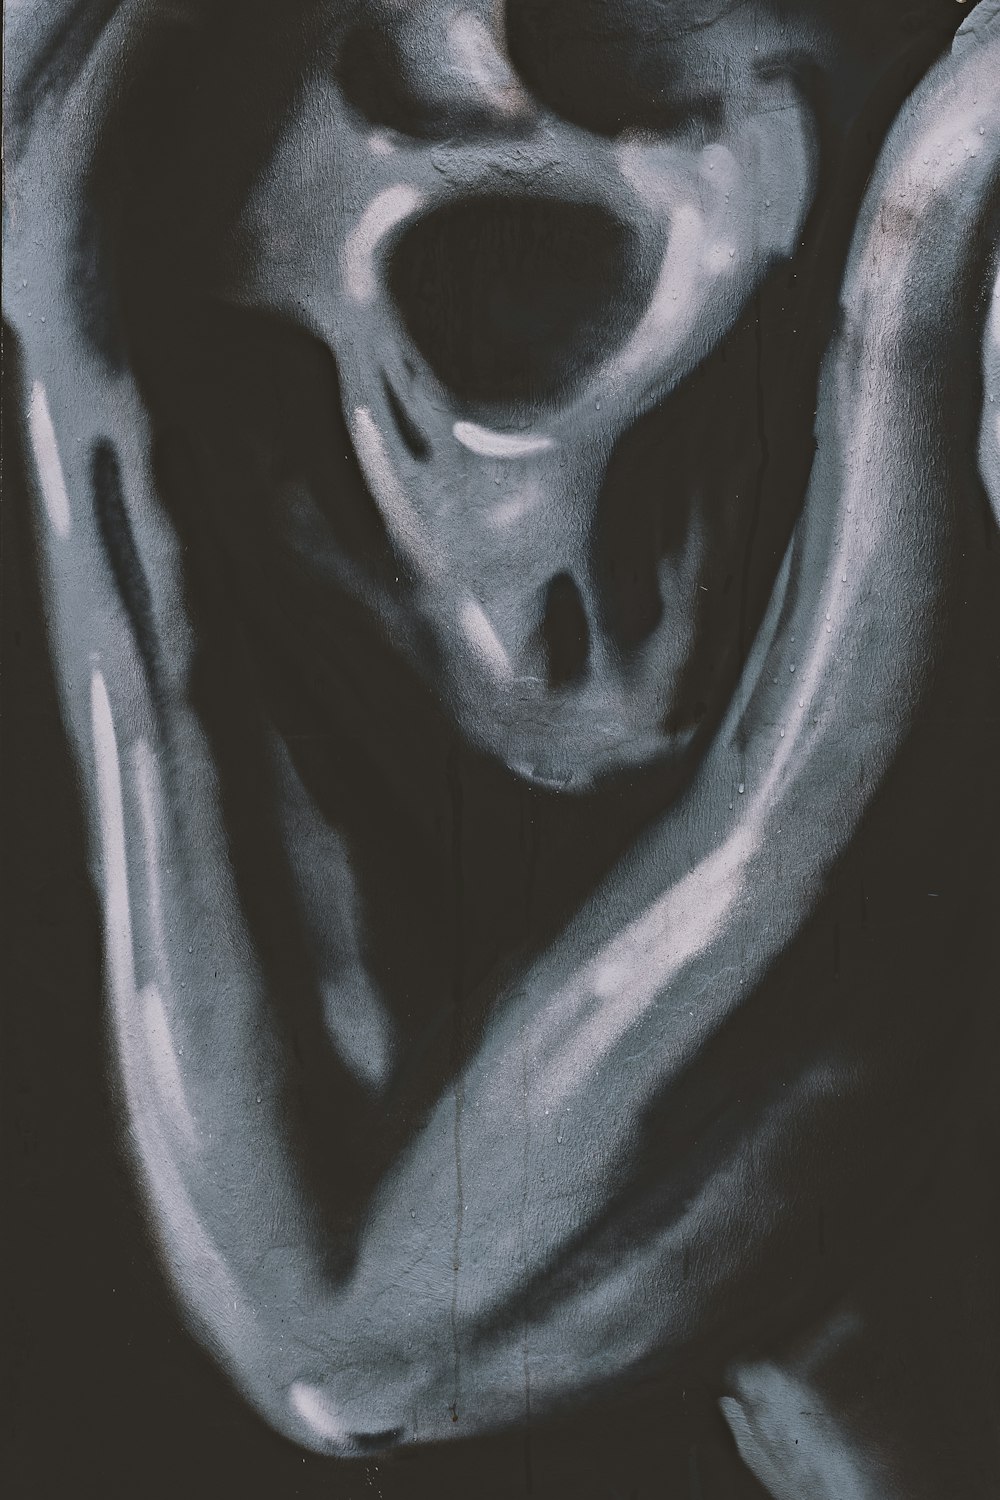 ein Schwarz-Weiß-Foto eines menschlichen Schädels